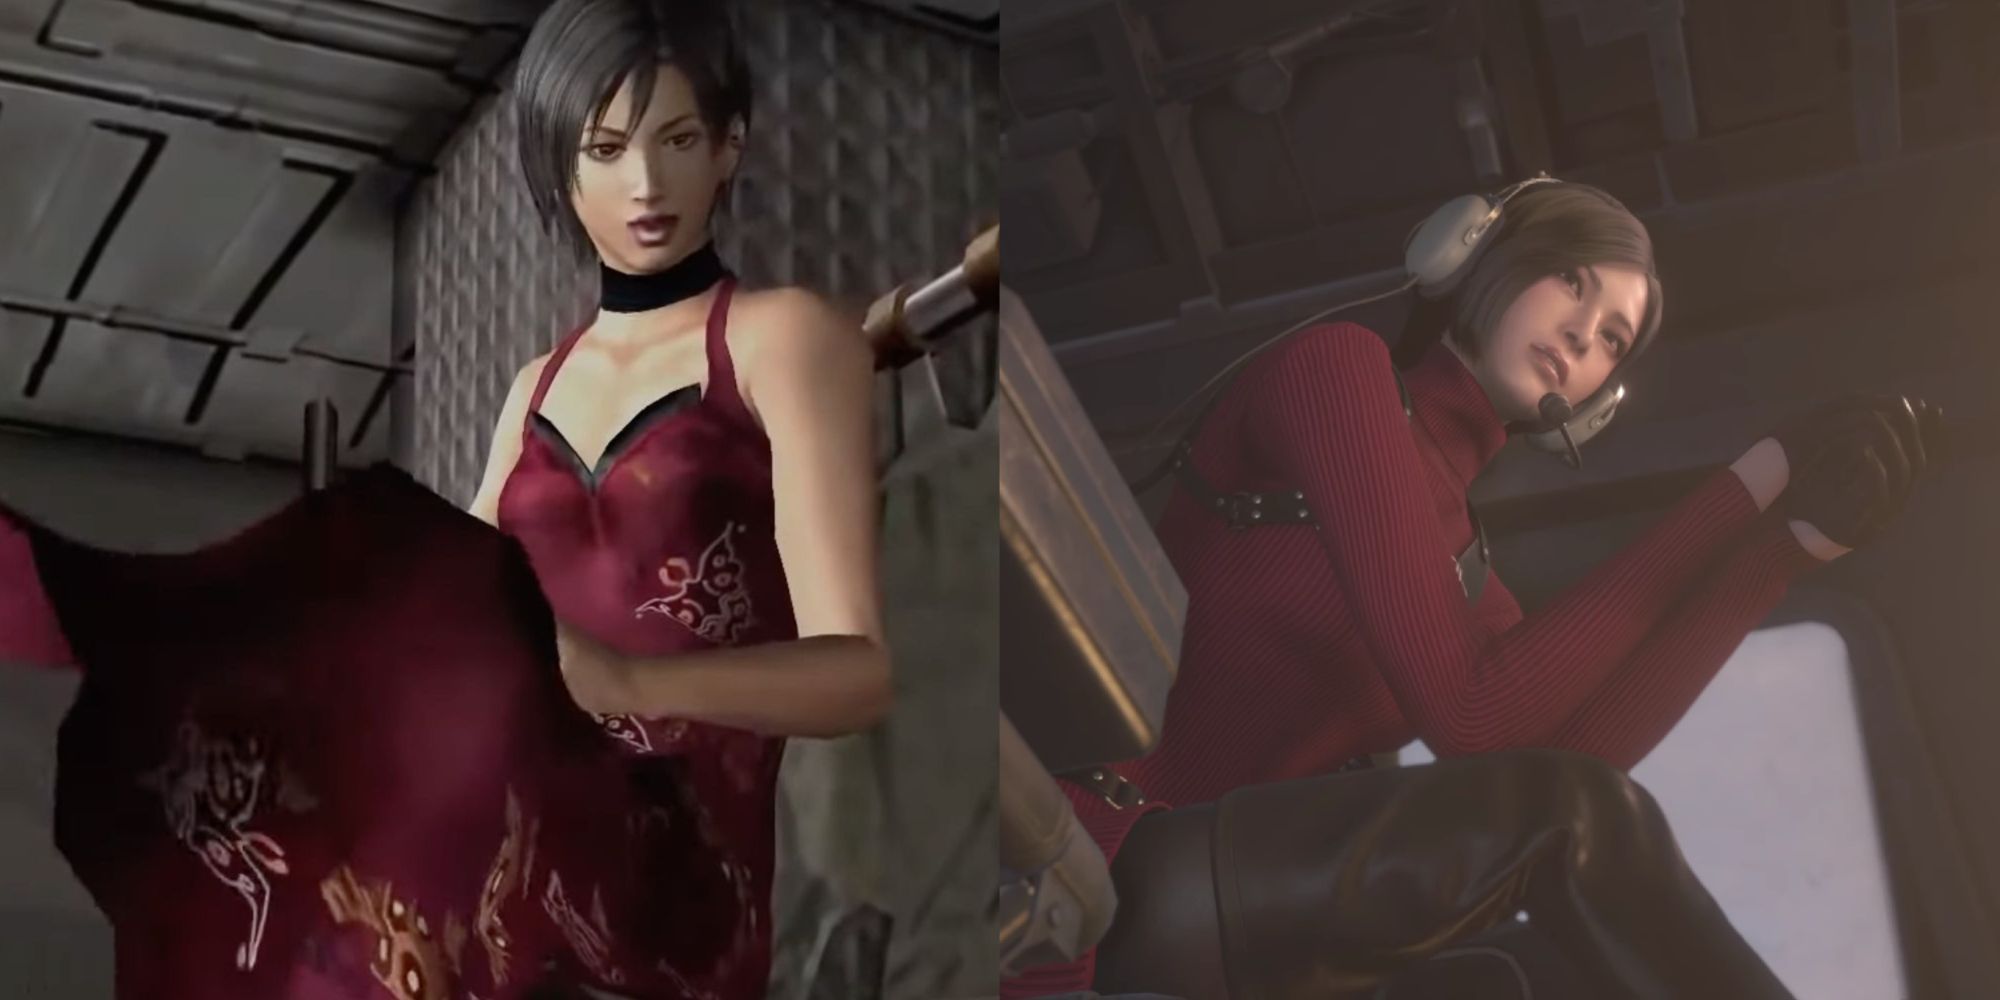 Eine Collage von Ada Wong in einem Kleid im Hubschrauber am Ende des Originalspiels und im Hubschrauber mit ihrem neuen Outfit in Resident Evil 4 Remake.